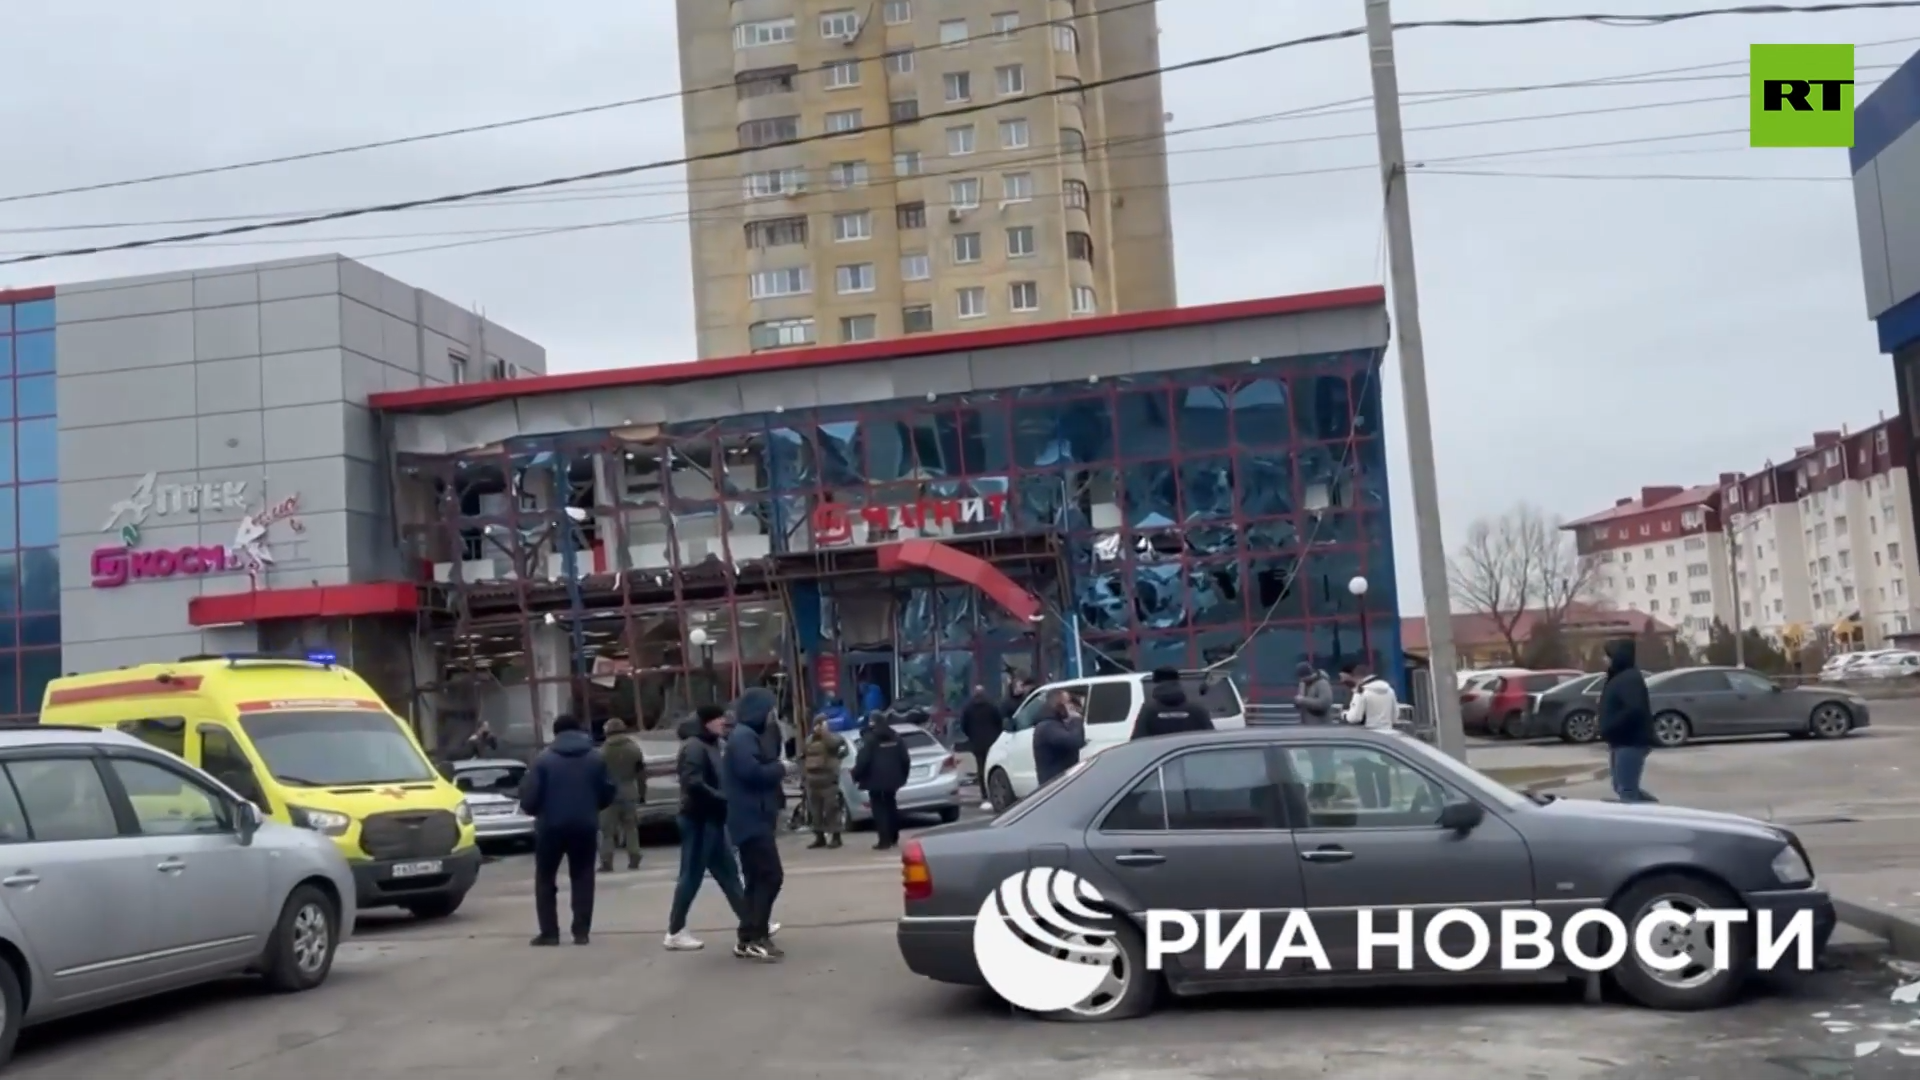 بوتين: قصف القوات الأوكرانية المدنيين في بيلغورود جريمة حرب ولن نترك مرتكبيها